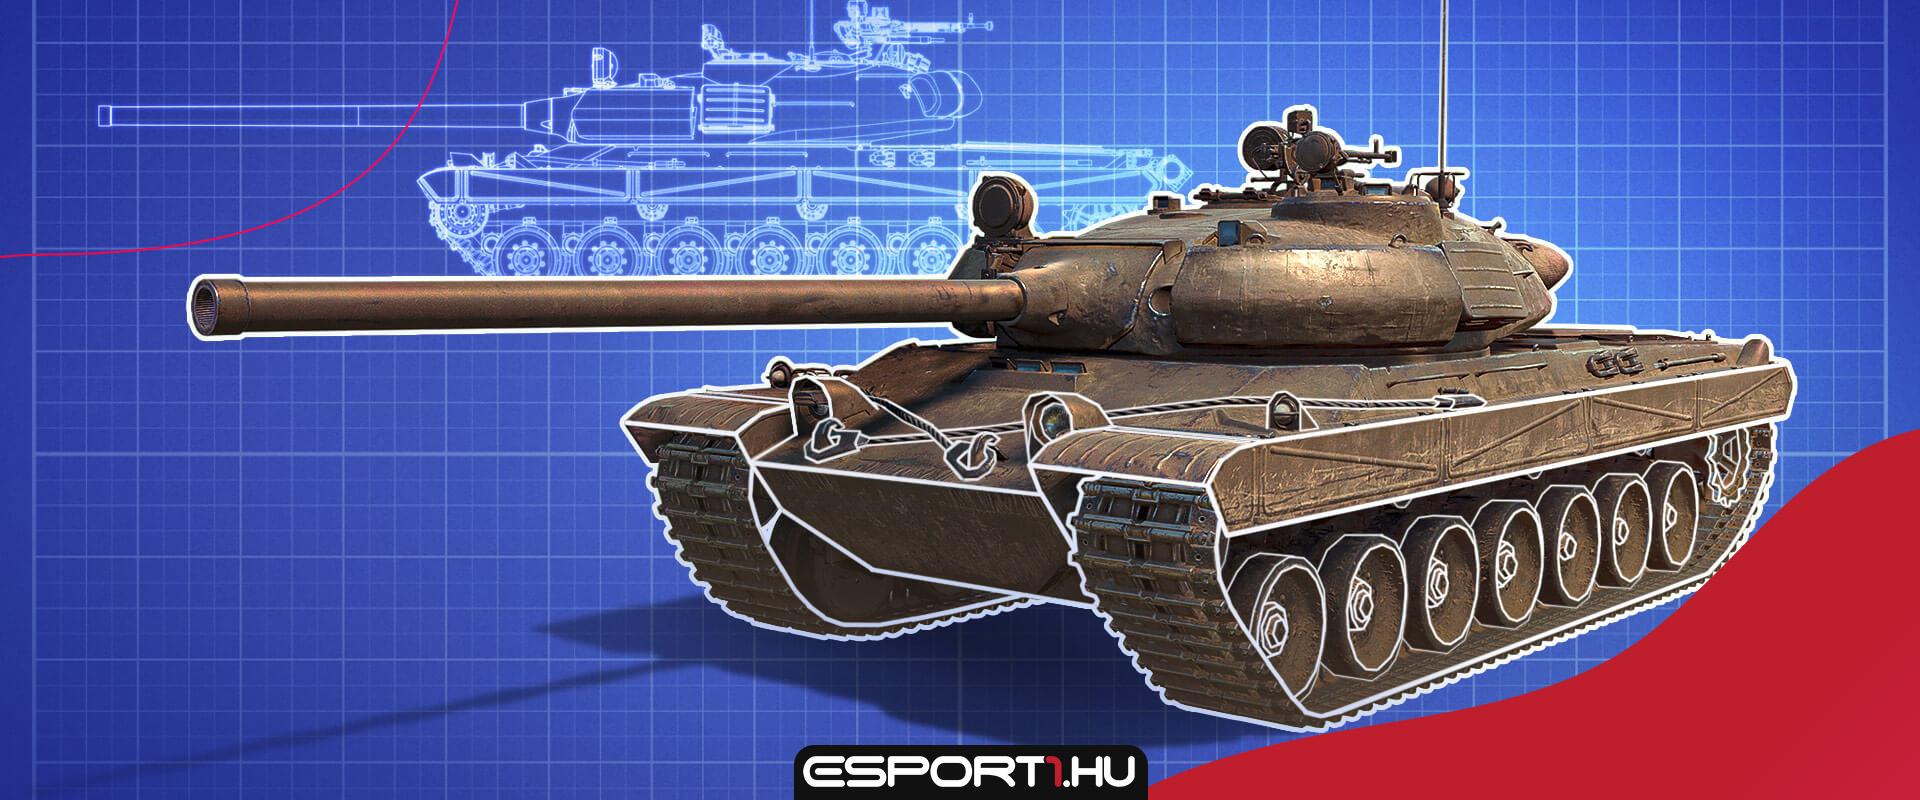 Teljesen új csehszlovák nehéz tank ág érkezik a WoT-ba